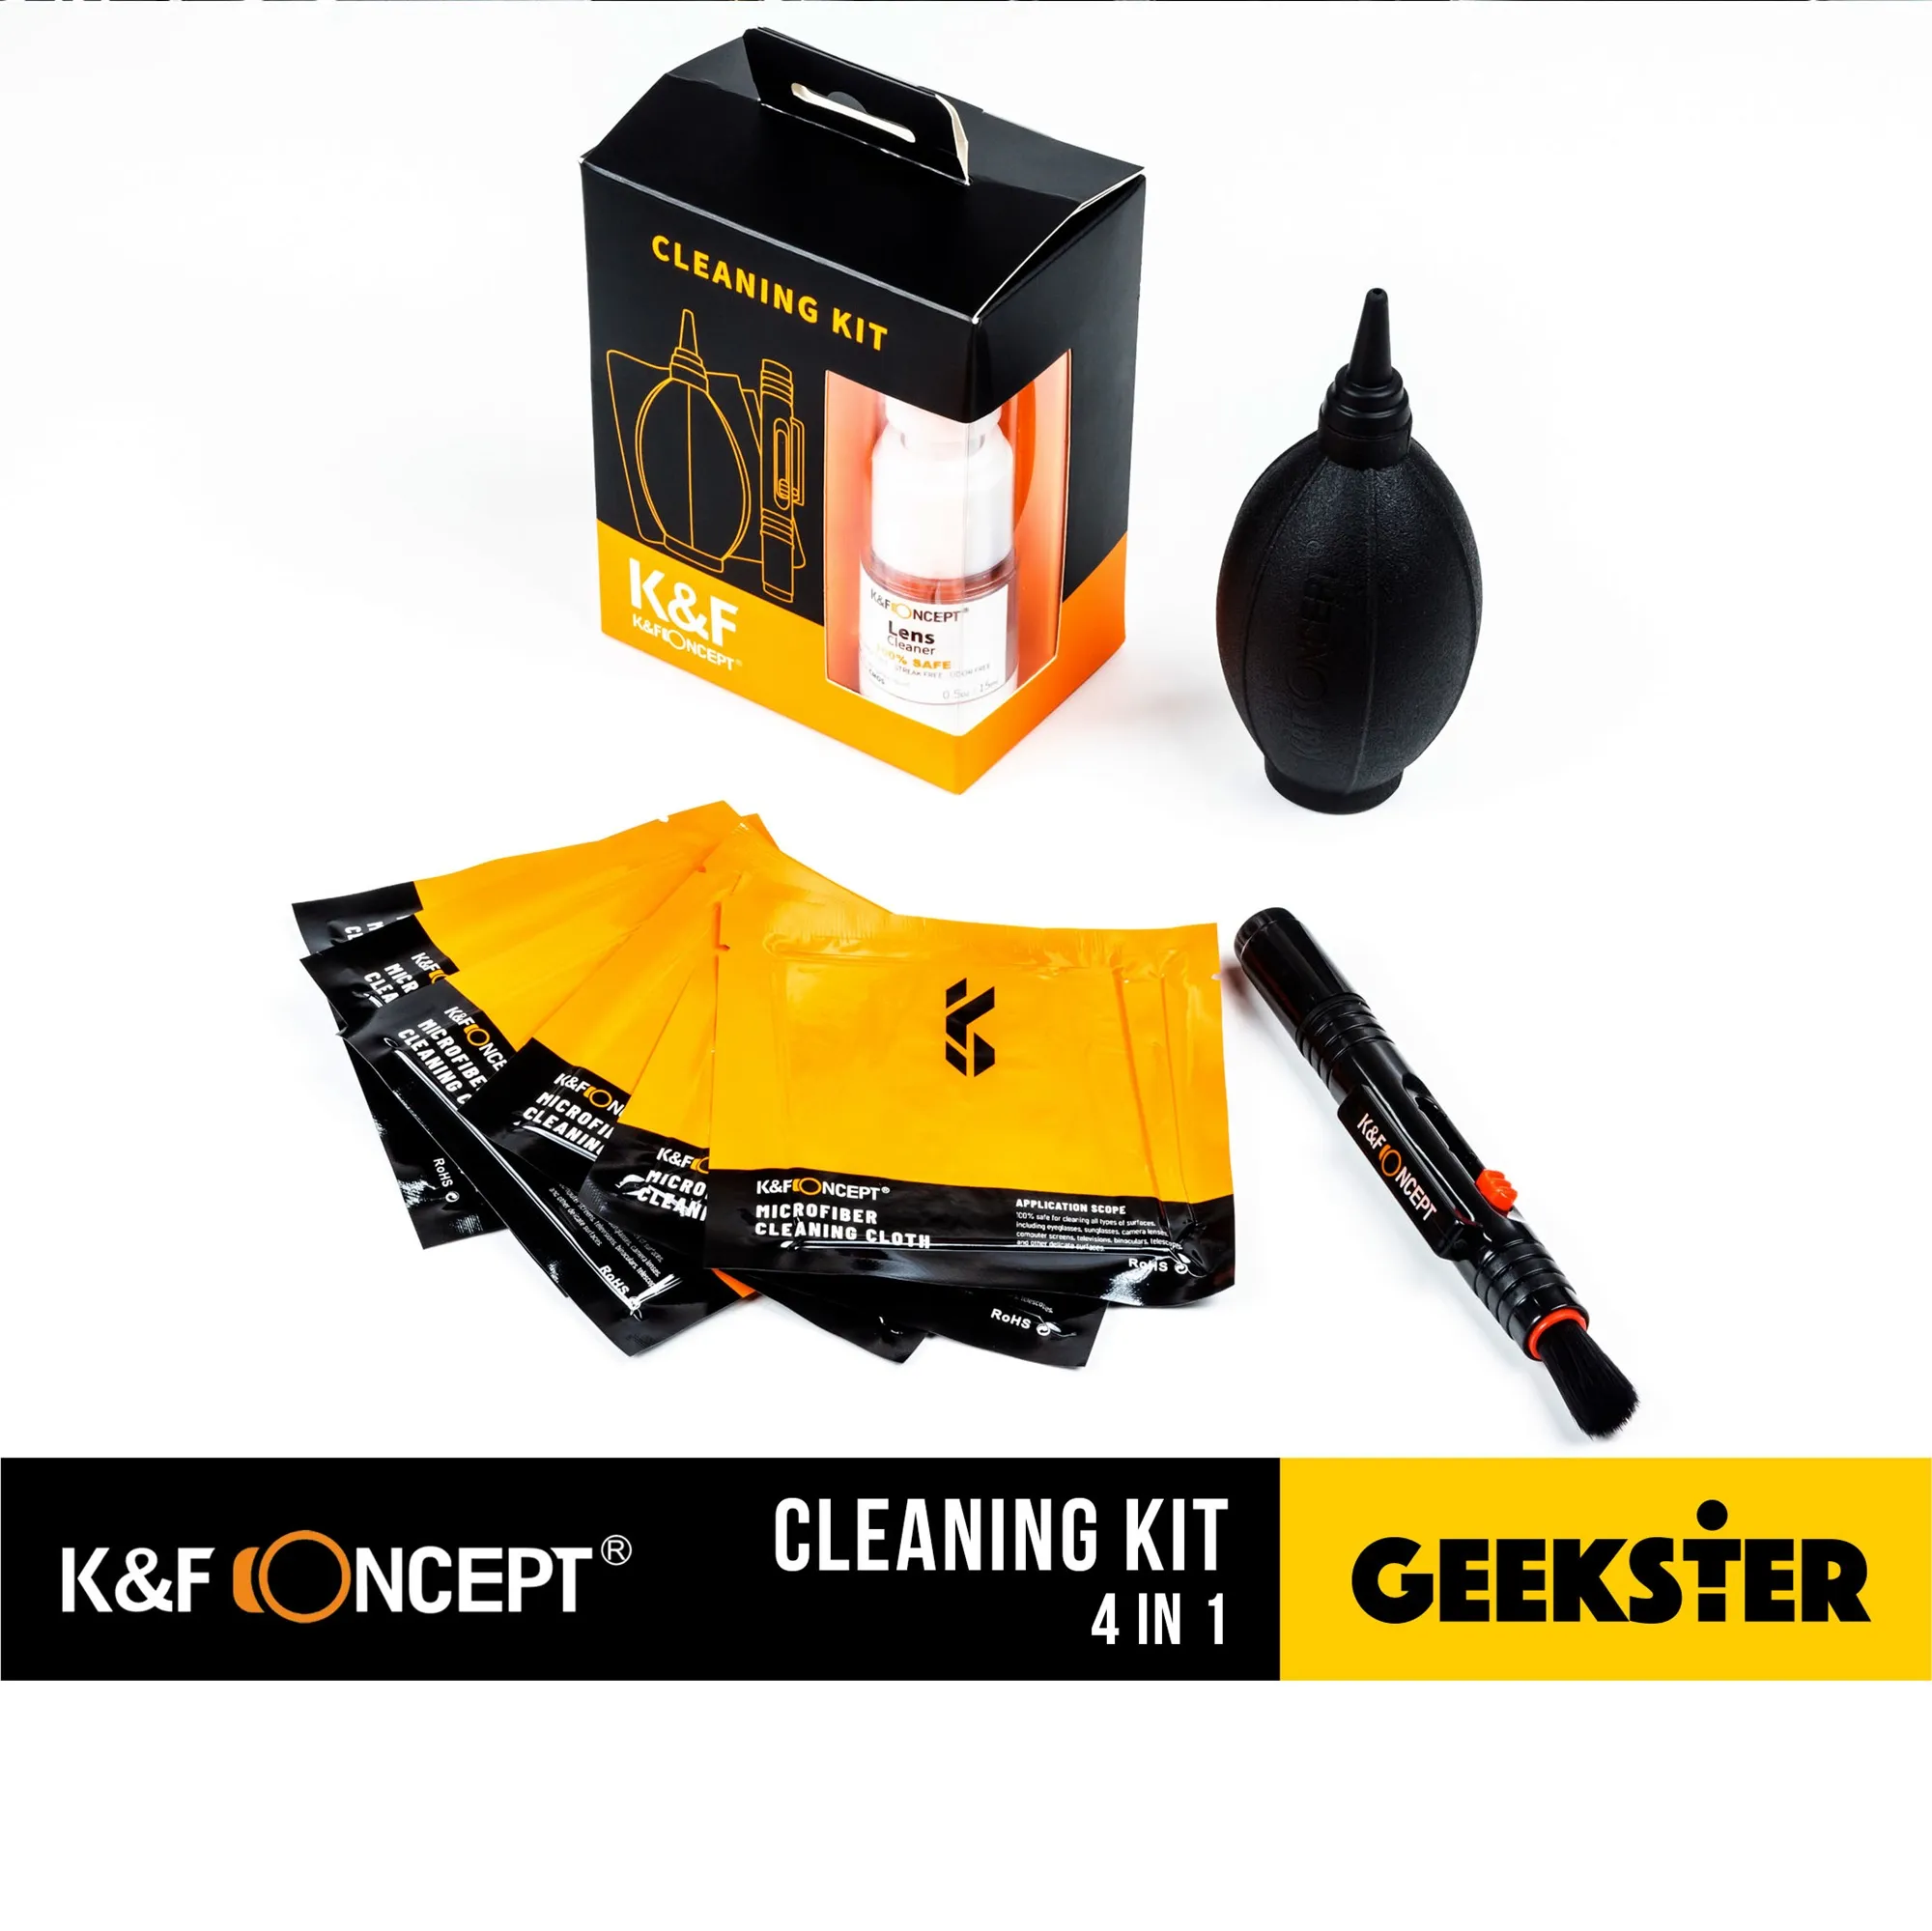 K&F Cleaning Kit 4 in 1 ชุดทำความสะอาดเลนส์ กล้อง ( Lenspen / ผ้าไมโครไฟเบอร์ / ลูกยางเป่าลม / น้ำยาเช็ดเลนส์ ) ( ชุดทำความสะอาด ทำความสะอาด ปากกาทำความสะอาดเลนส์ ) ( Geekster )